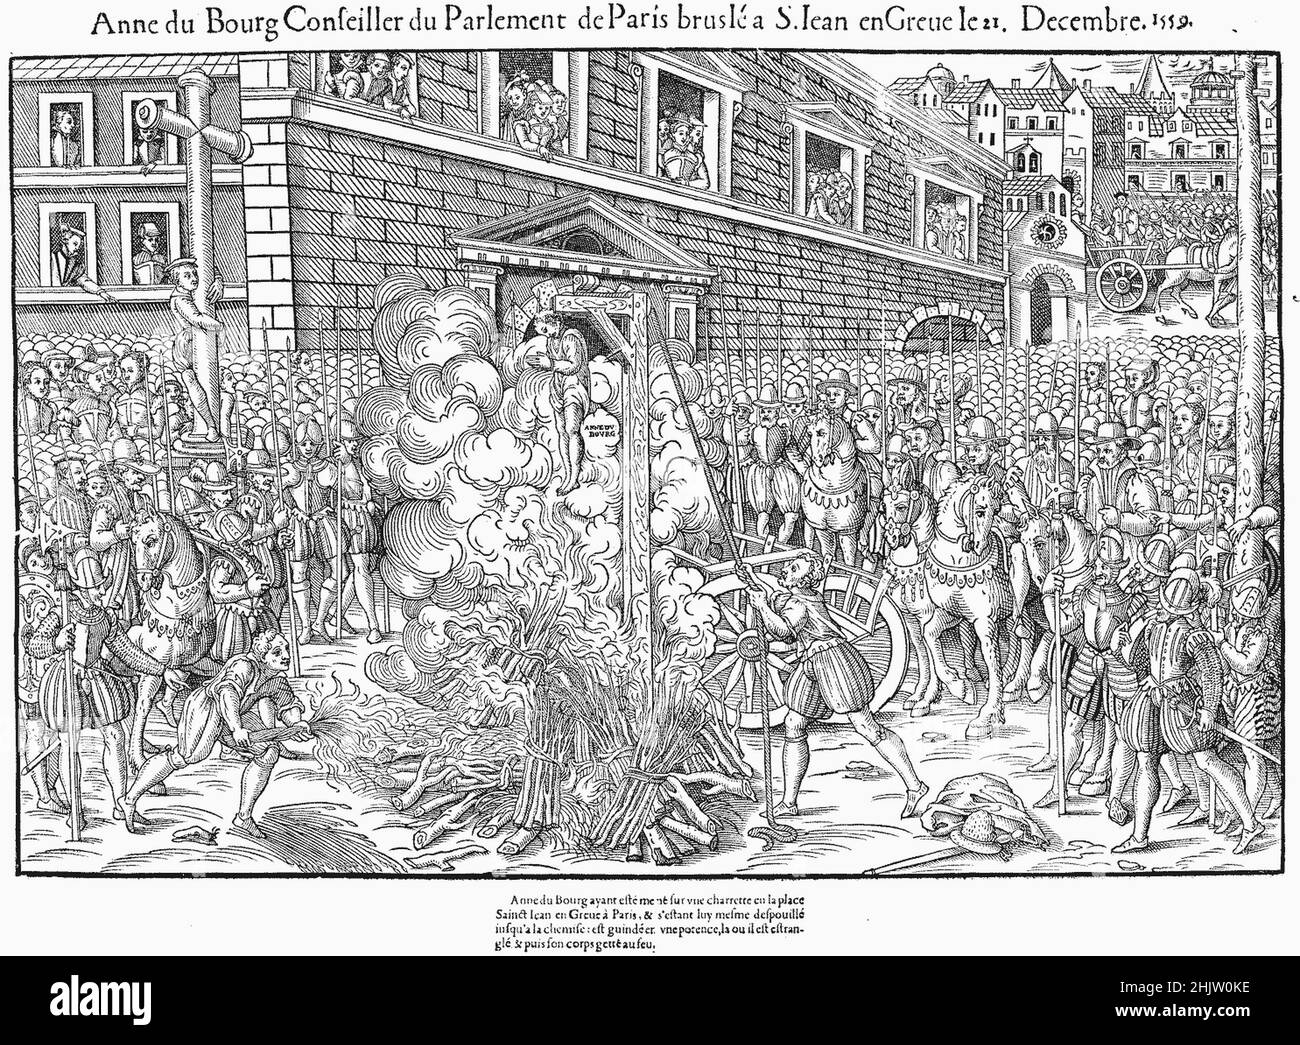 El juicio y la ejecución de Anne du Bourg fue un acontecimiento crítico en la historia del conflicto religioso en París, antes del estallido de las guerras francesas de religión tres años más tarde. Anne du Bourg, juez del Parlement de París, sería ejecutada, después de llamar al rey Enrique II un adúltero y blasfemo, Foto de stock